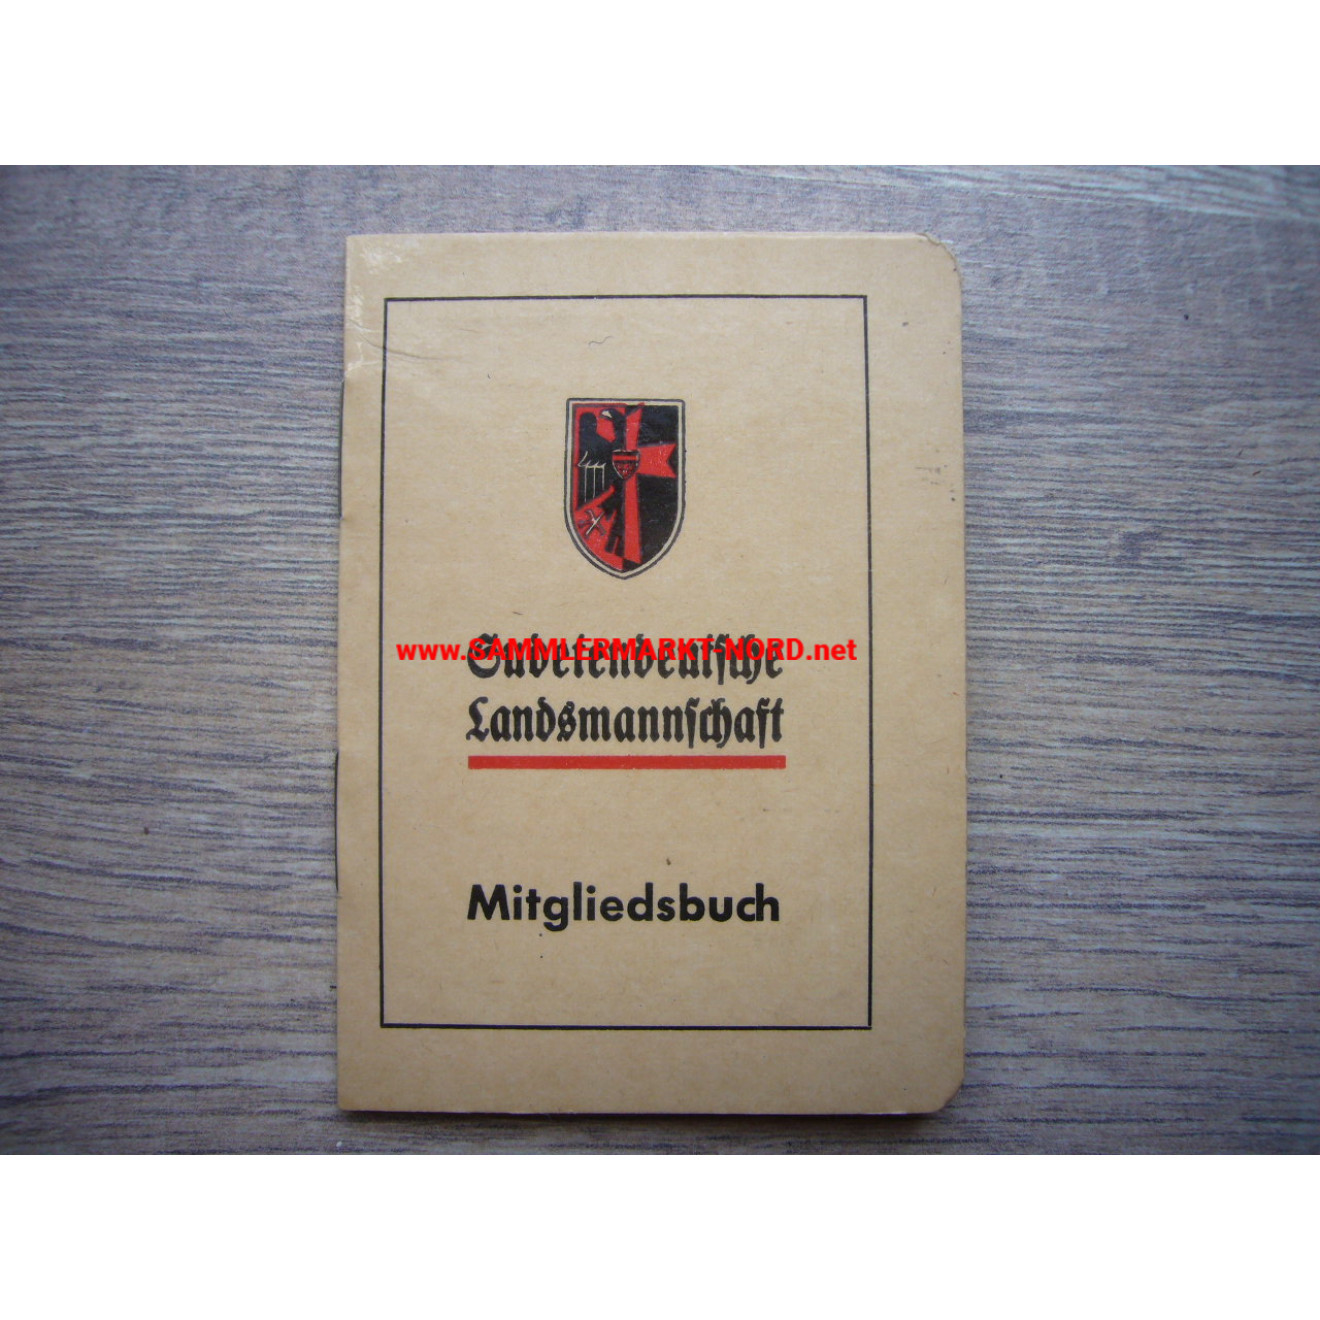 Sudetendeutsche Landsmannschaft - Mitgliedsbuch